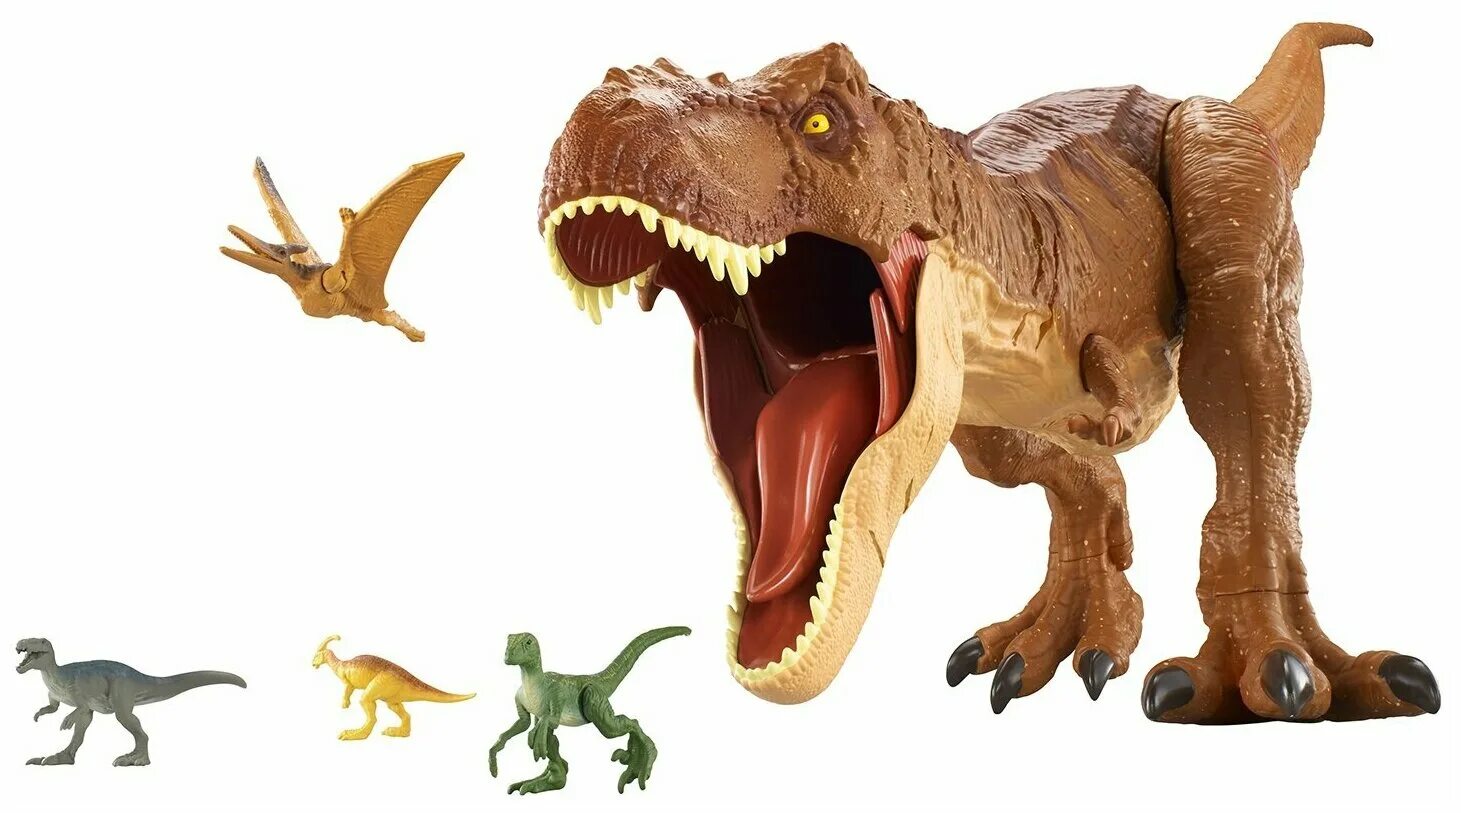 Мир динозавров игрушка. Mattel Jurassic World fmm63 колоссальный Тиранозавр рекс. Игрушка Jurassic World t-Rex. Фигурка Mattel Jurassic World супер колоссальный Тираннозавр рекс fmm63, 40 см. Игрушки динозавры мир Юрского периода Тиранозавр.